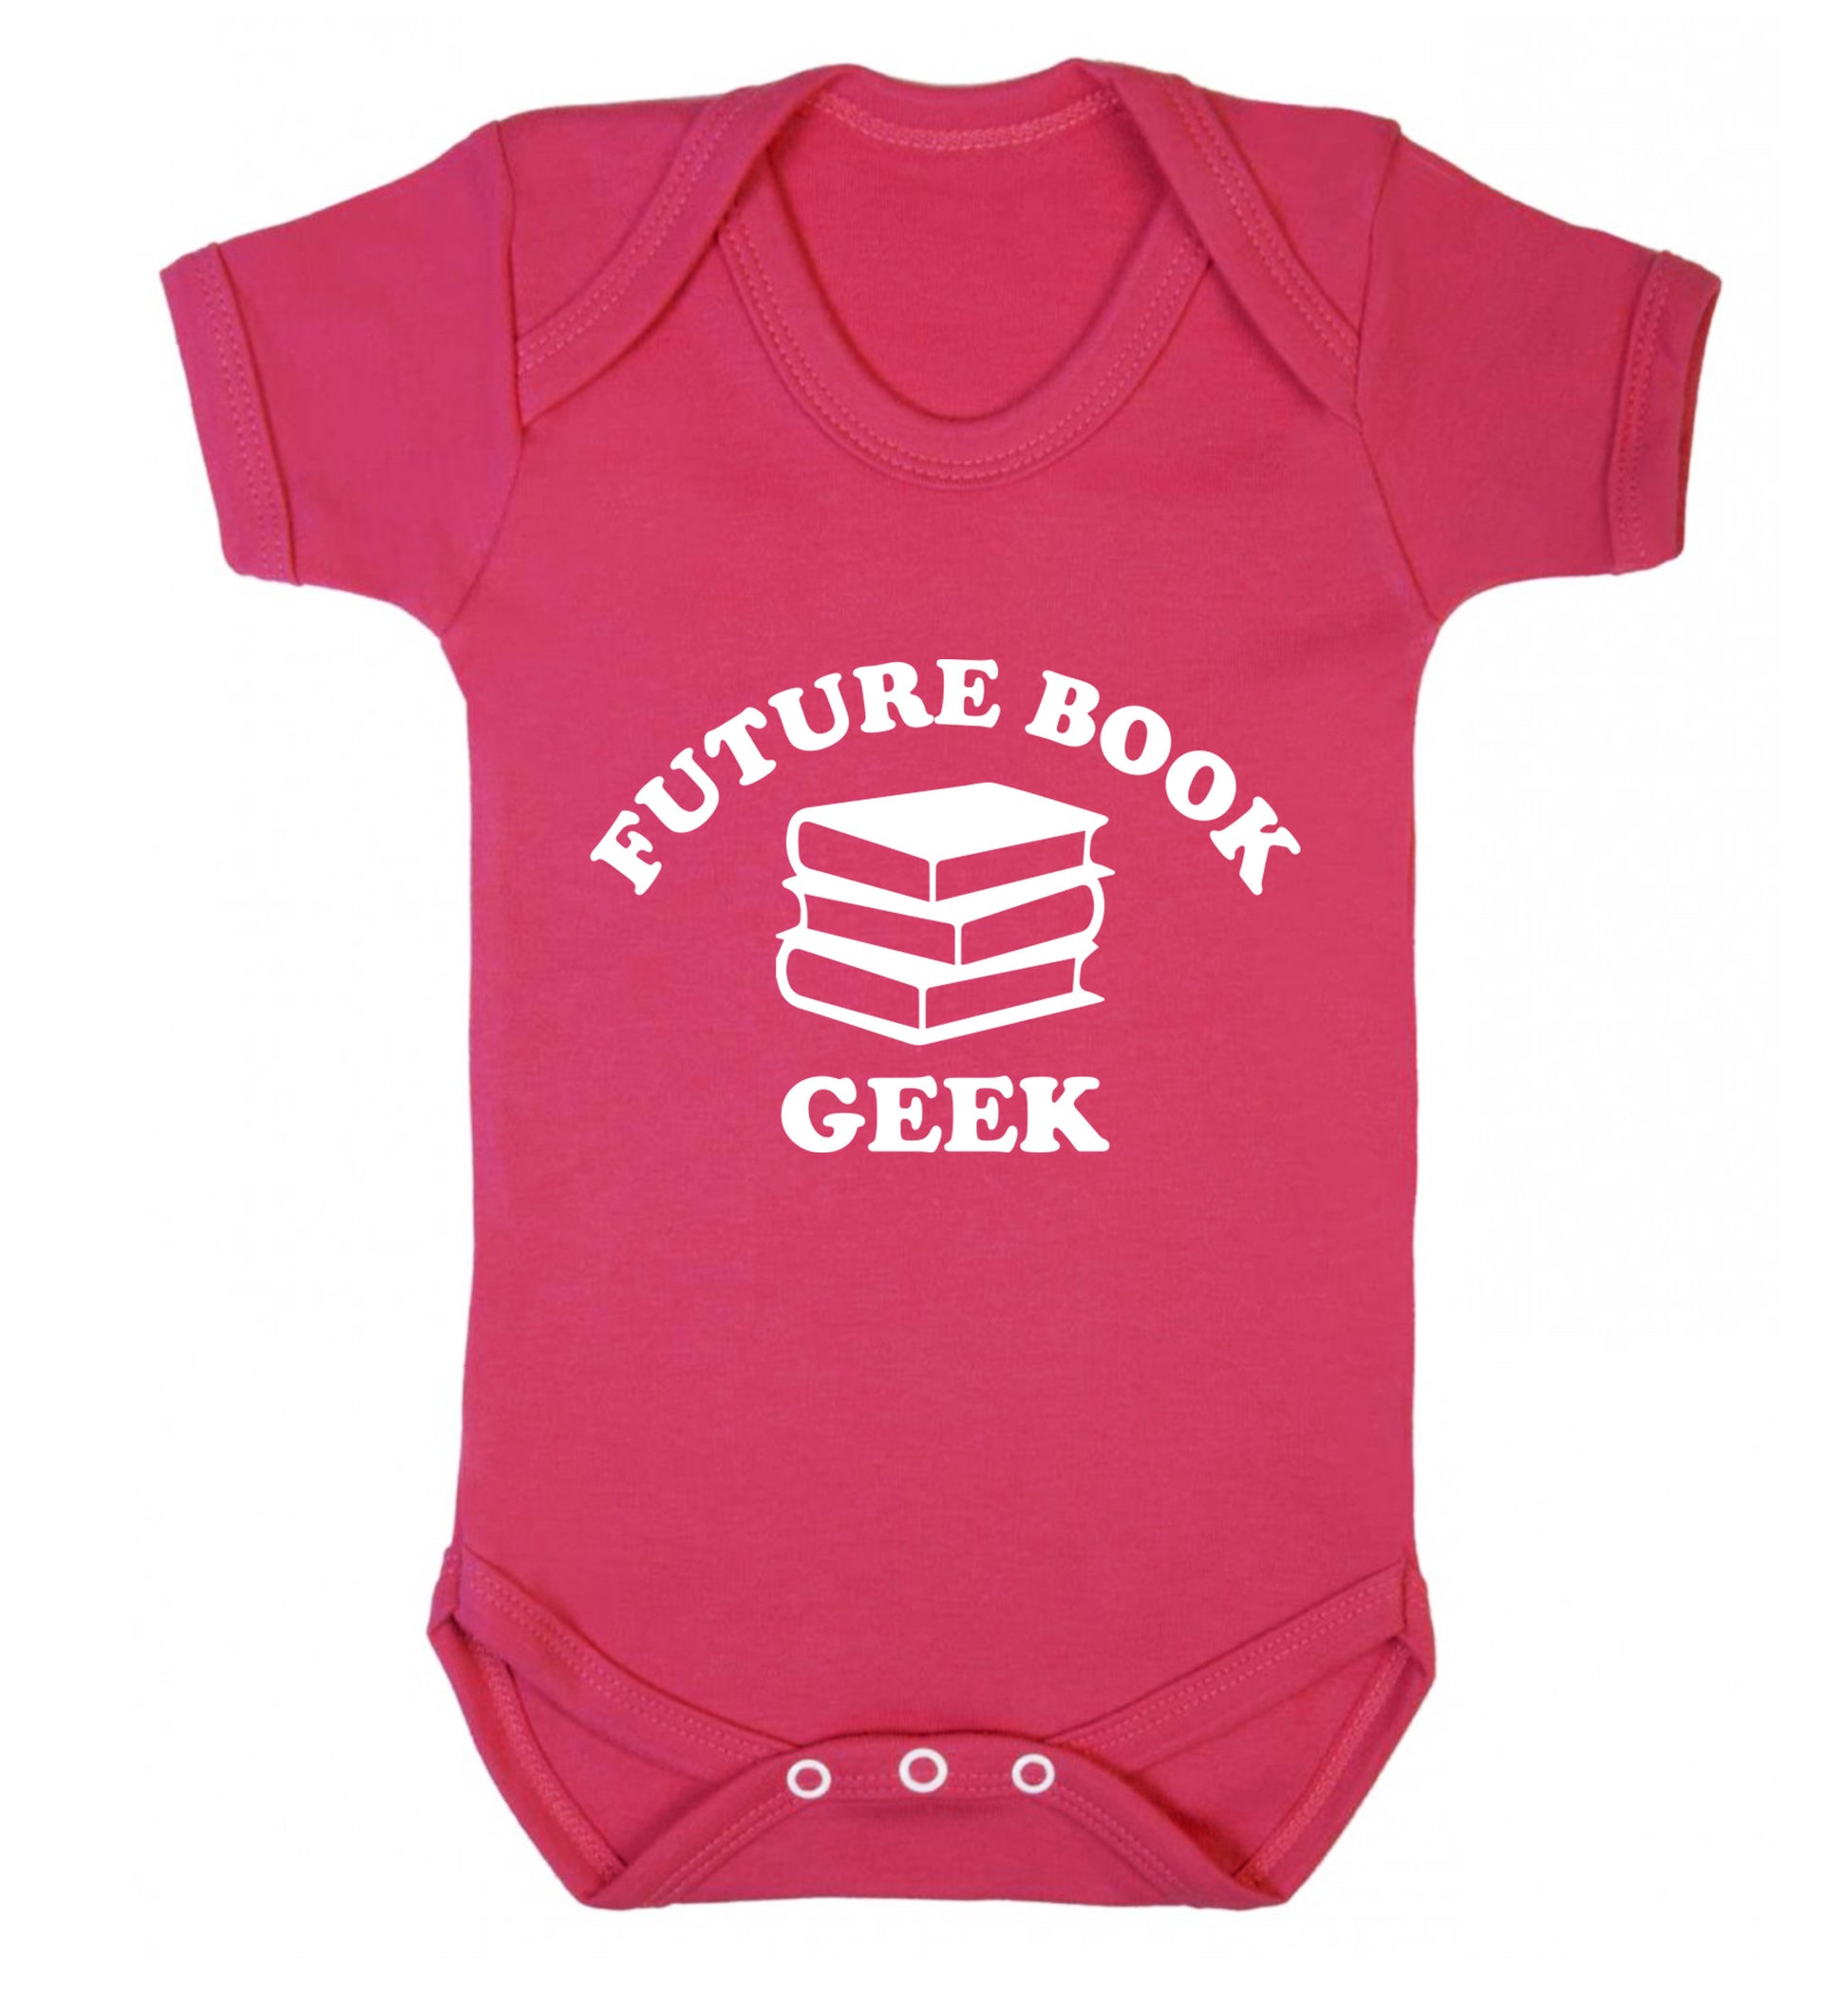 Future book geek Baby Vest dark pink 18-24 months